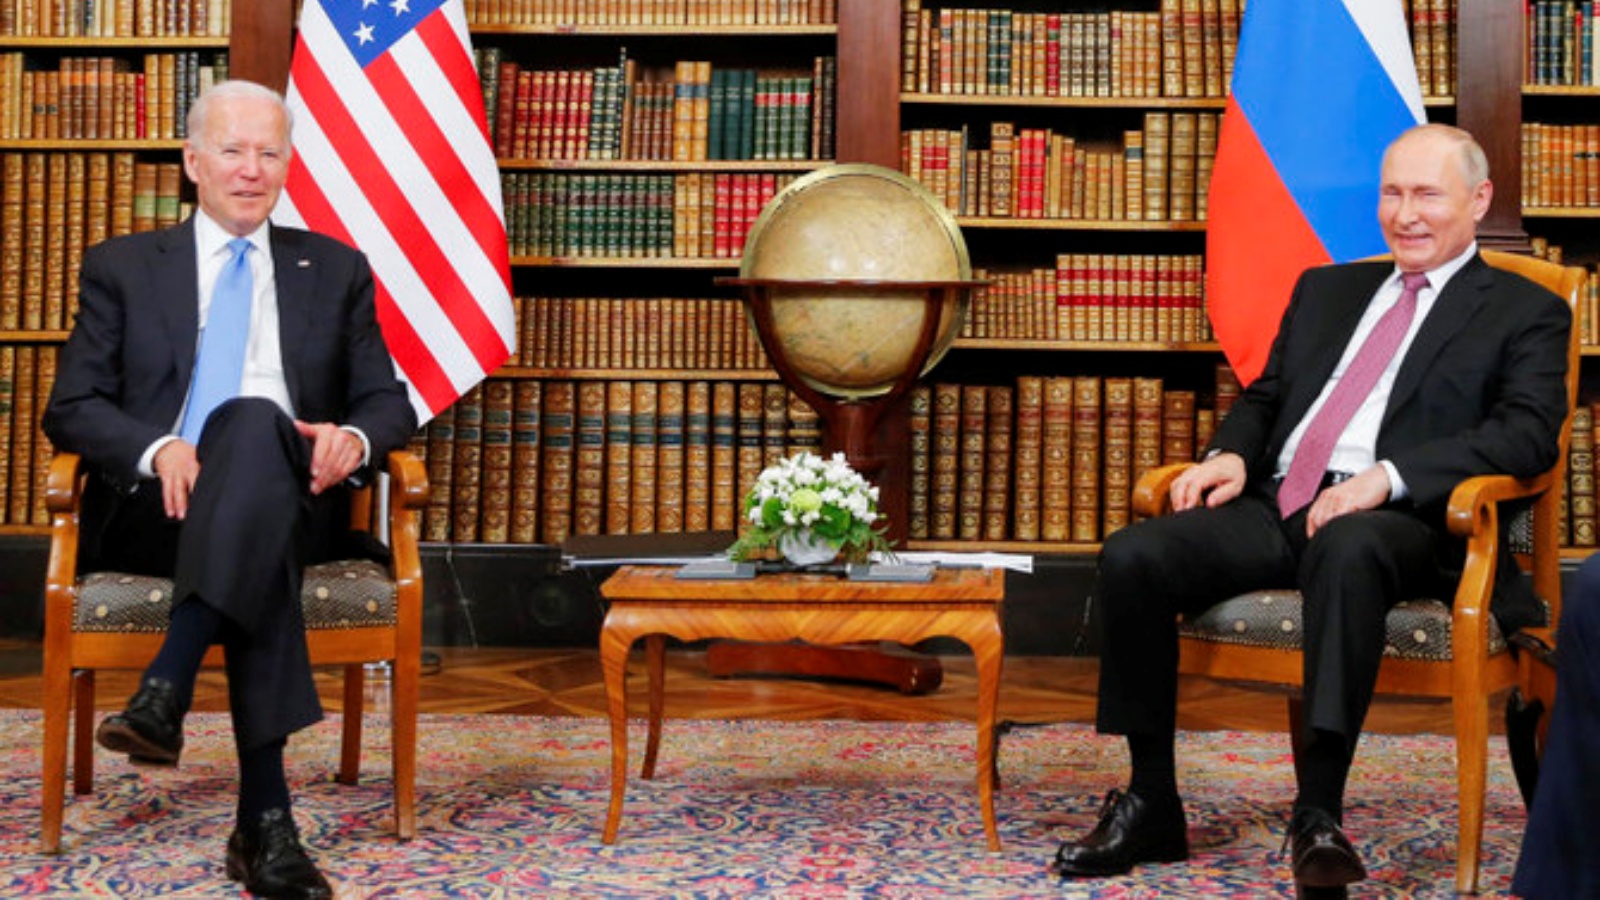 الرئيس الأميركي جو بايدن (إلى اليسار) يلتقي بالرئيس الروسي فالديمير بوتين في 'Villa la Grange' في جنيف في 16 حزيران/يونيو 2021.